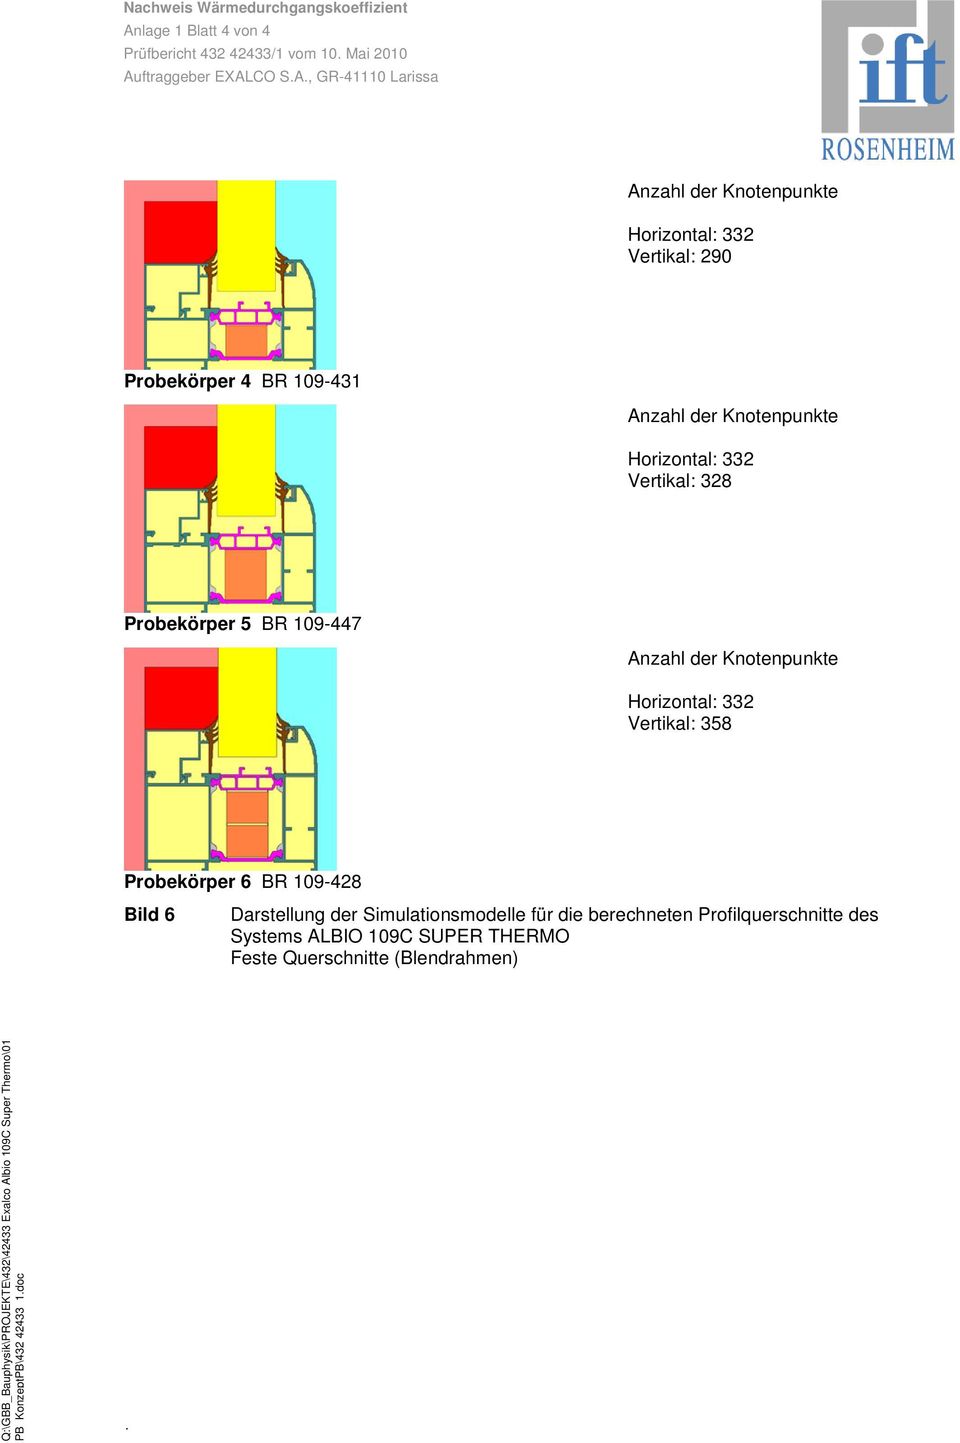 109-428 Bild 6 Darstellung der Simulationsmodelle für die berechneten Profilquerschnitte des Systems ALBIO 109C SUPER THERMO